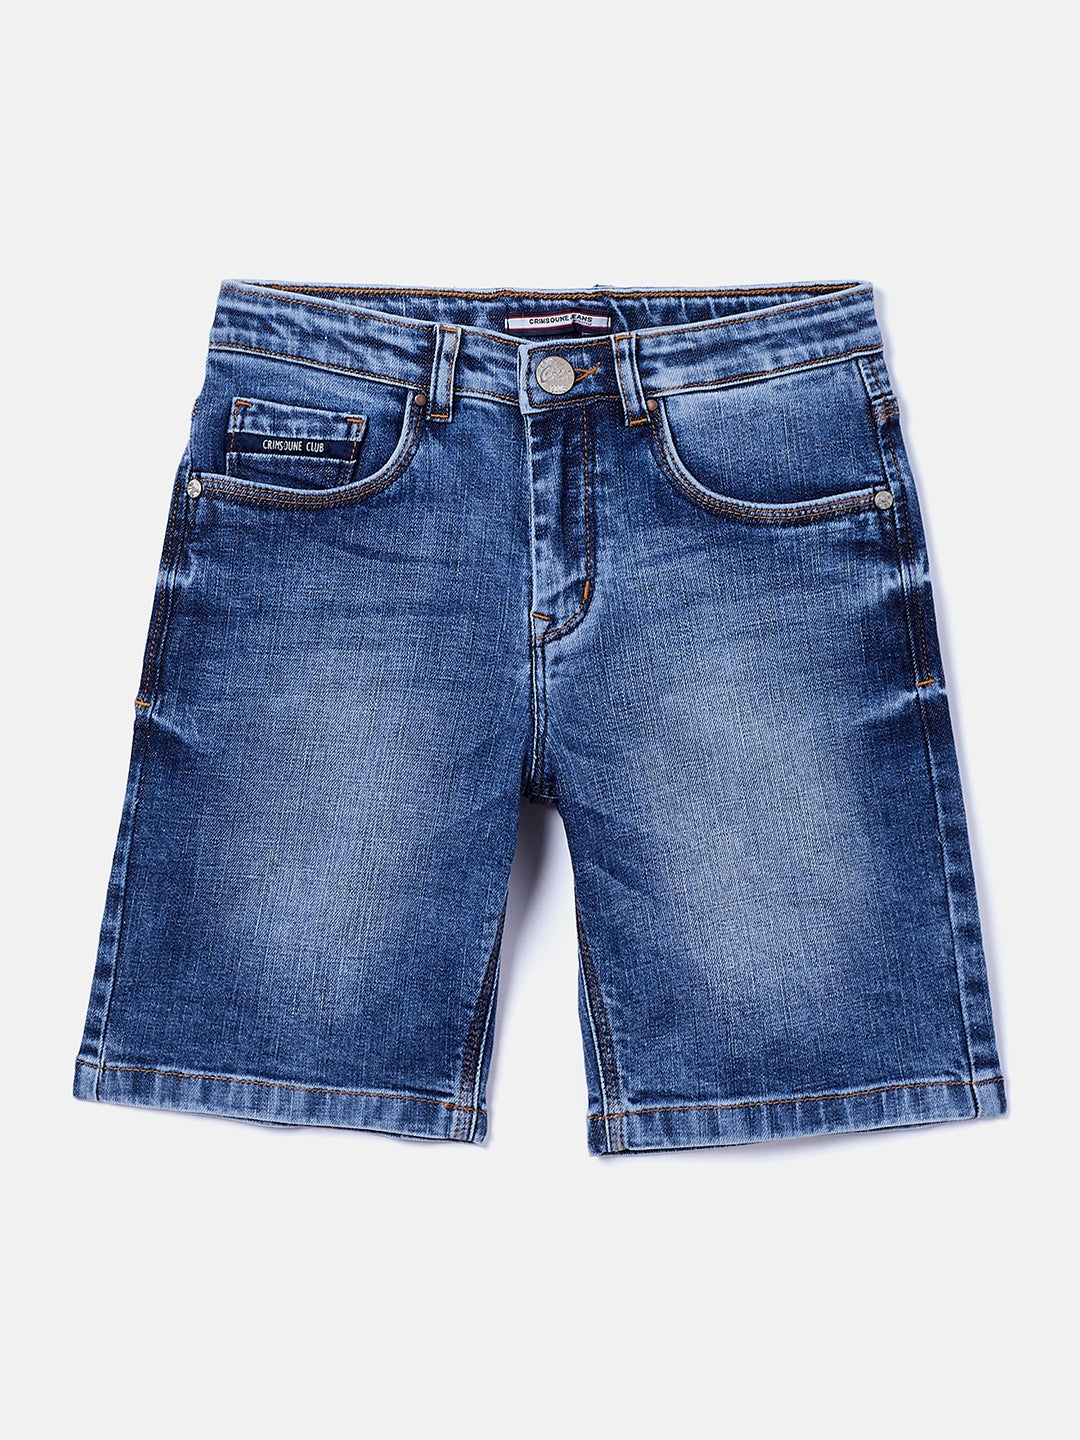 Blue Denim Shorts - Boys Shorts